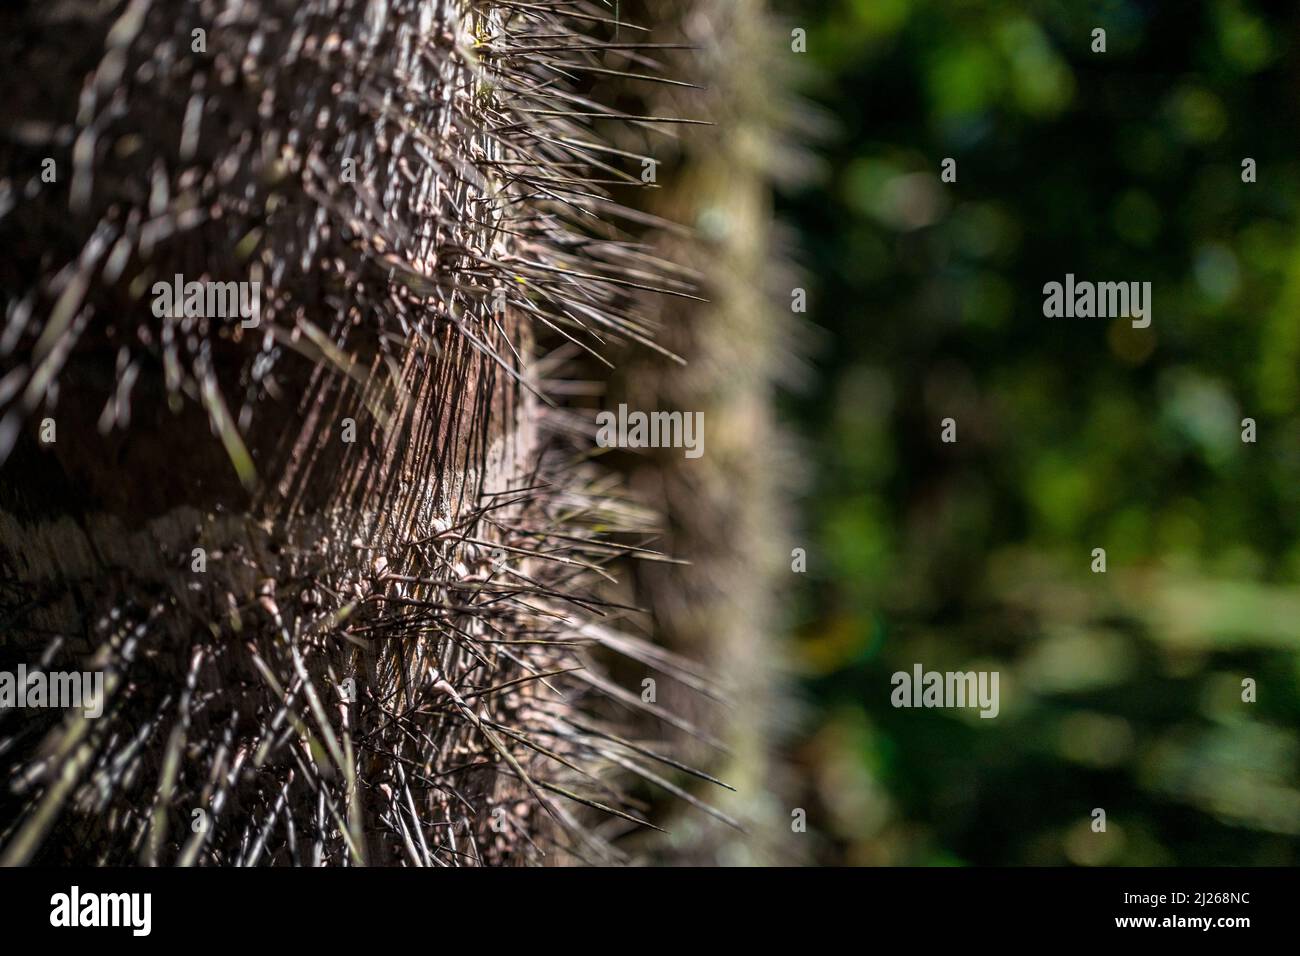 Un tronc de palmier de pêche est vu couvert de épines acérées, ressemblant à des aiguilles sur une ferme près d'El Tambo, Cauca, Colombie. Banque D'Images